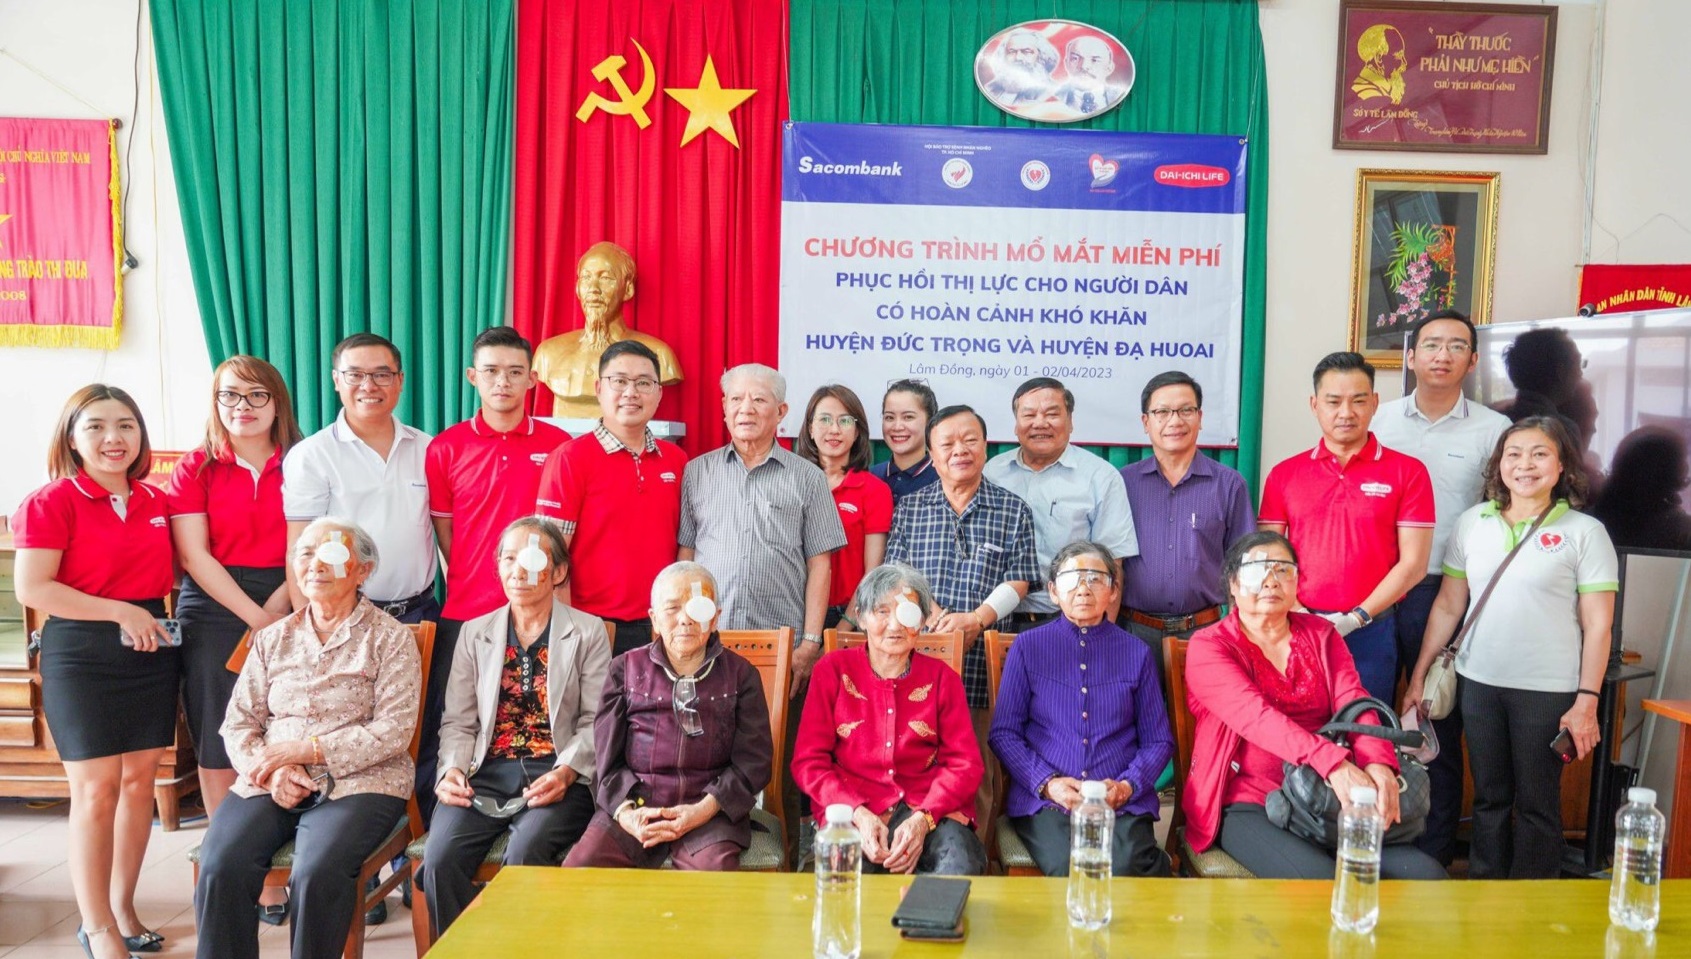 Chương trình mổ mắt miễn phí cho các bệnh nhân tại tỉnh Lâm Đồng